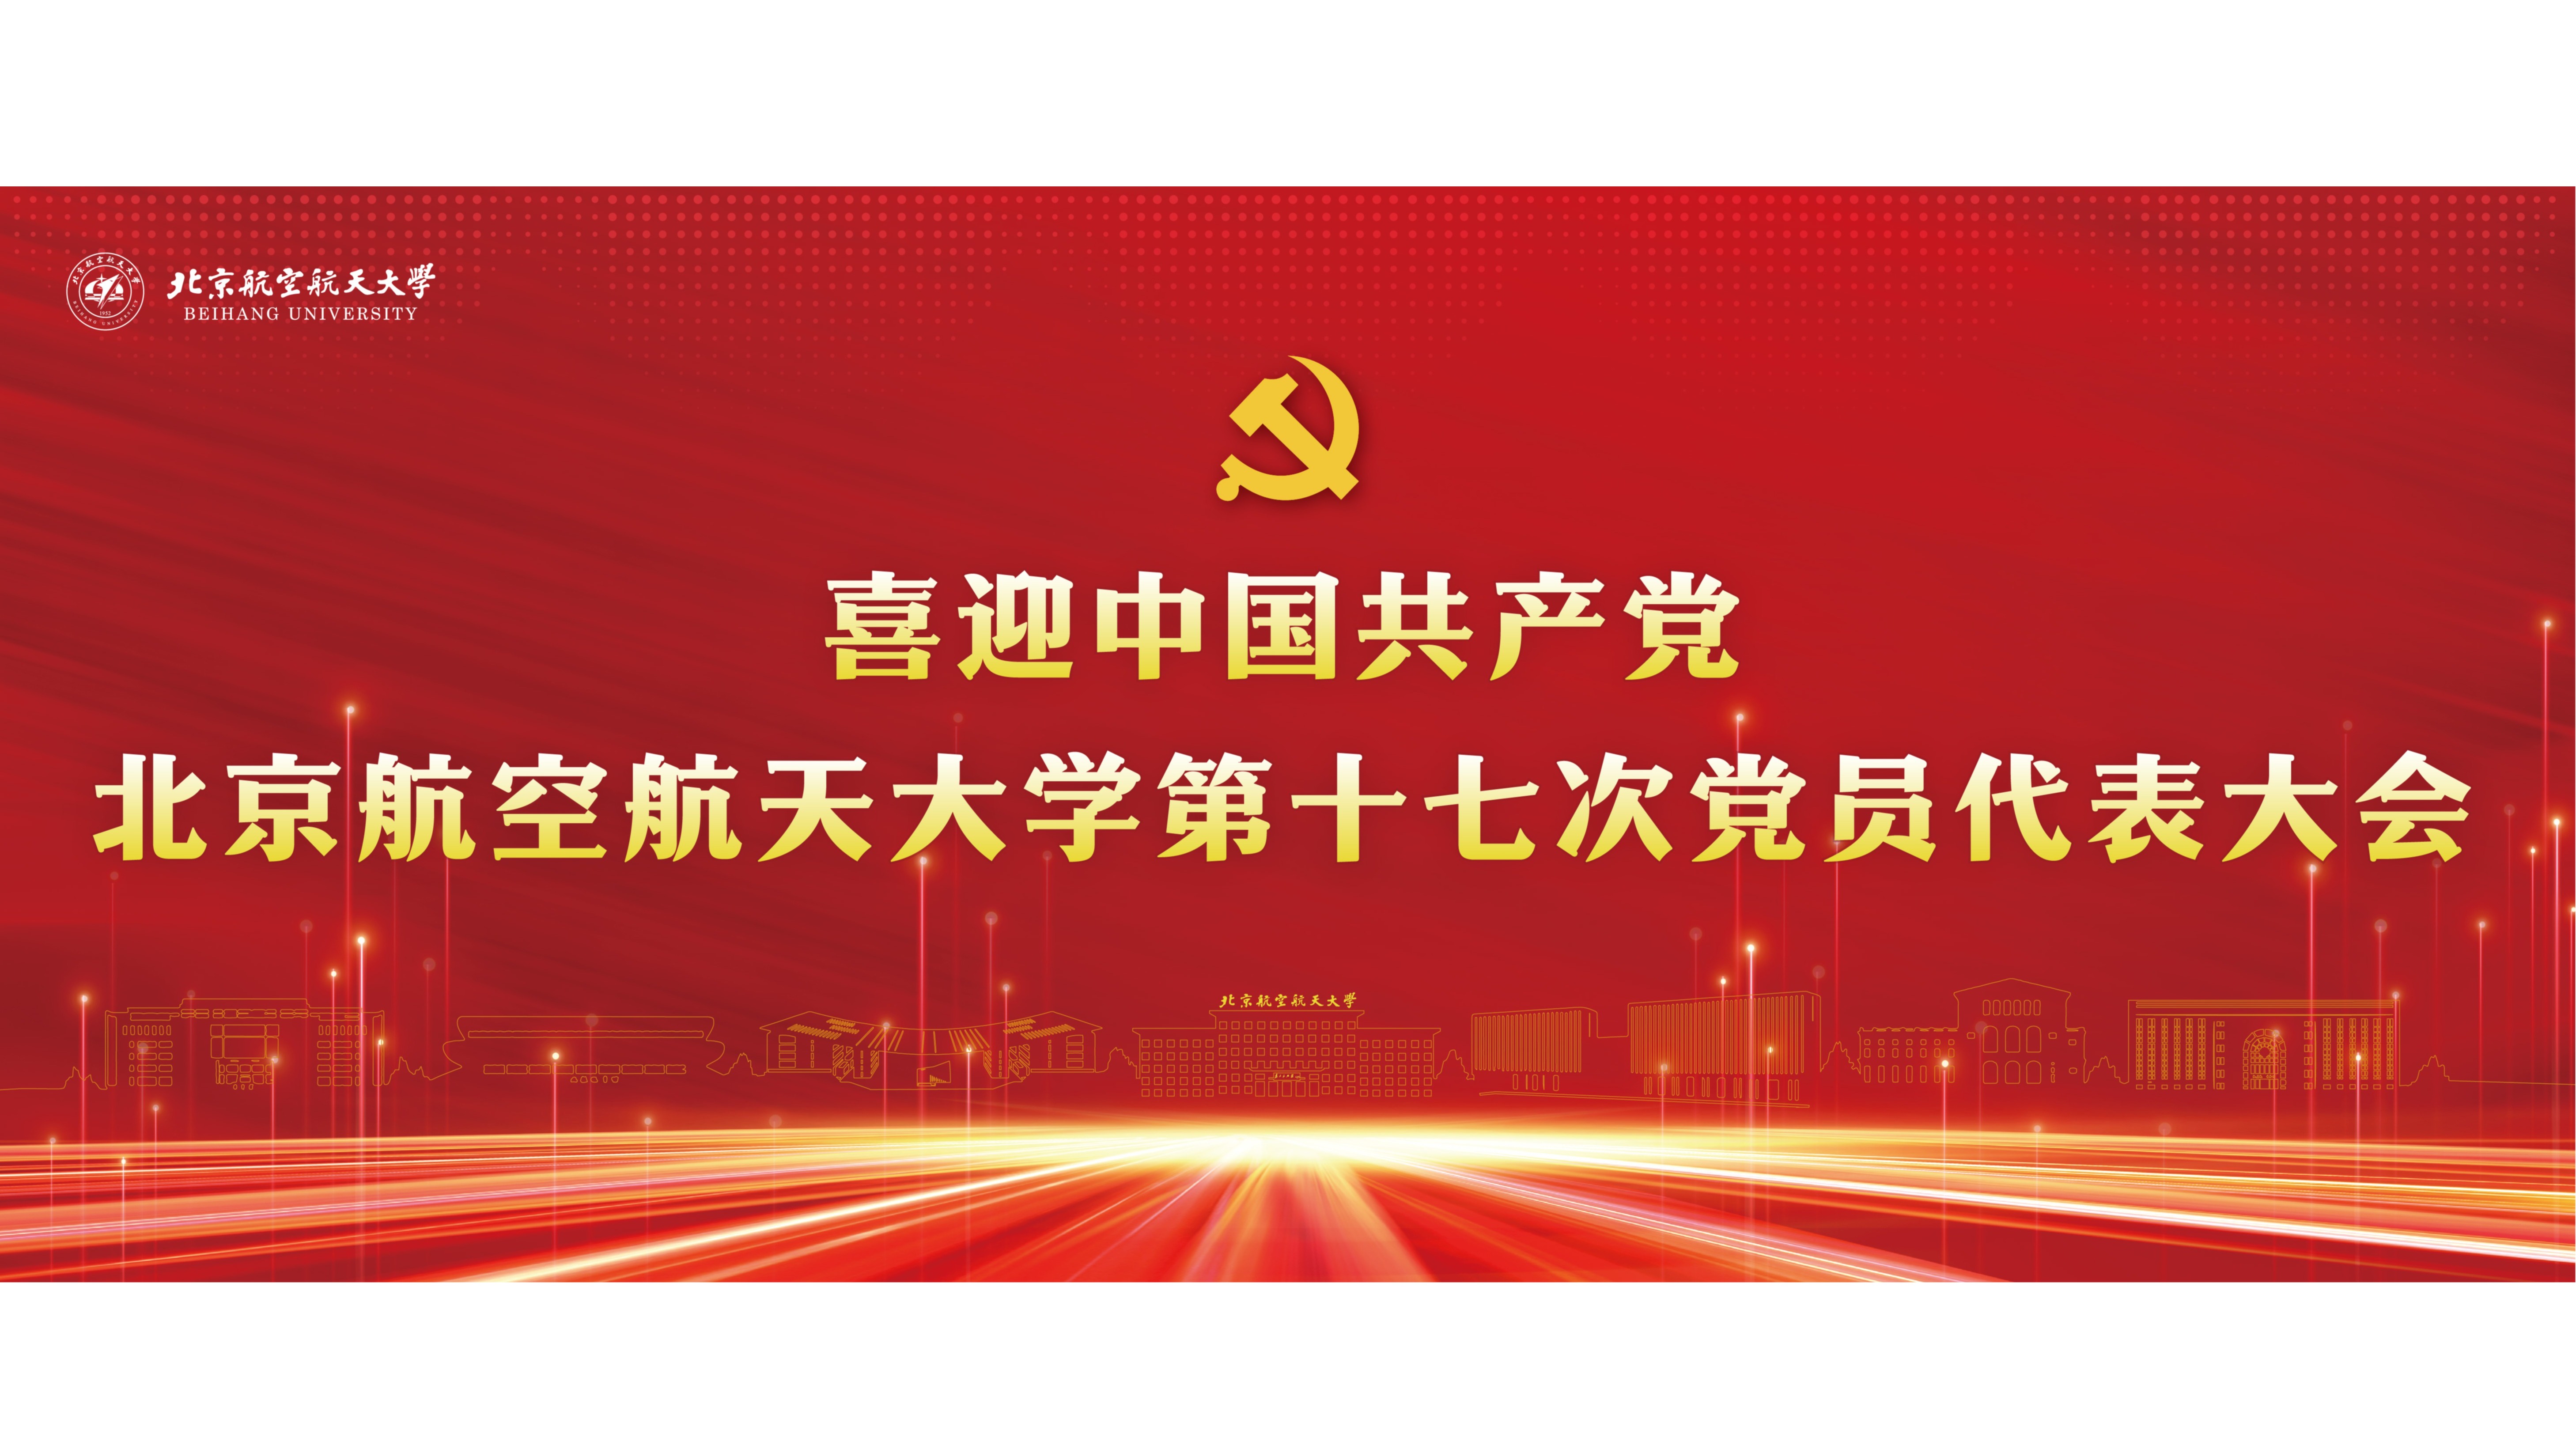 喜迎中国共产党北京航空航天大学第十七次党员代表大会